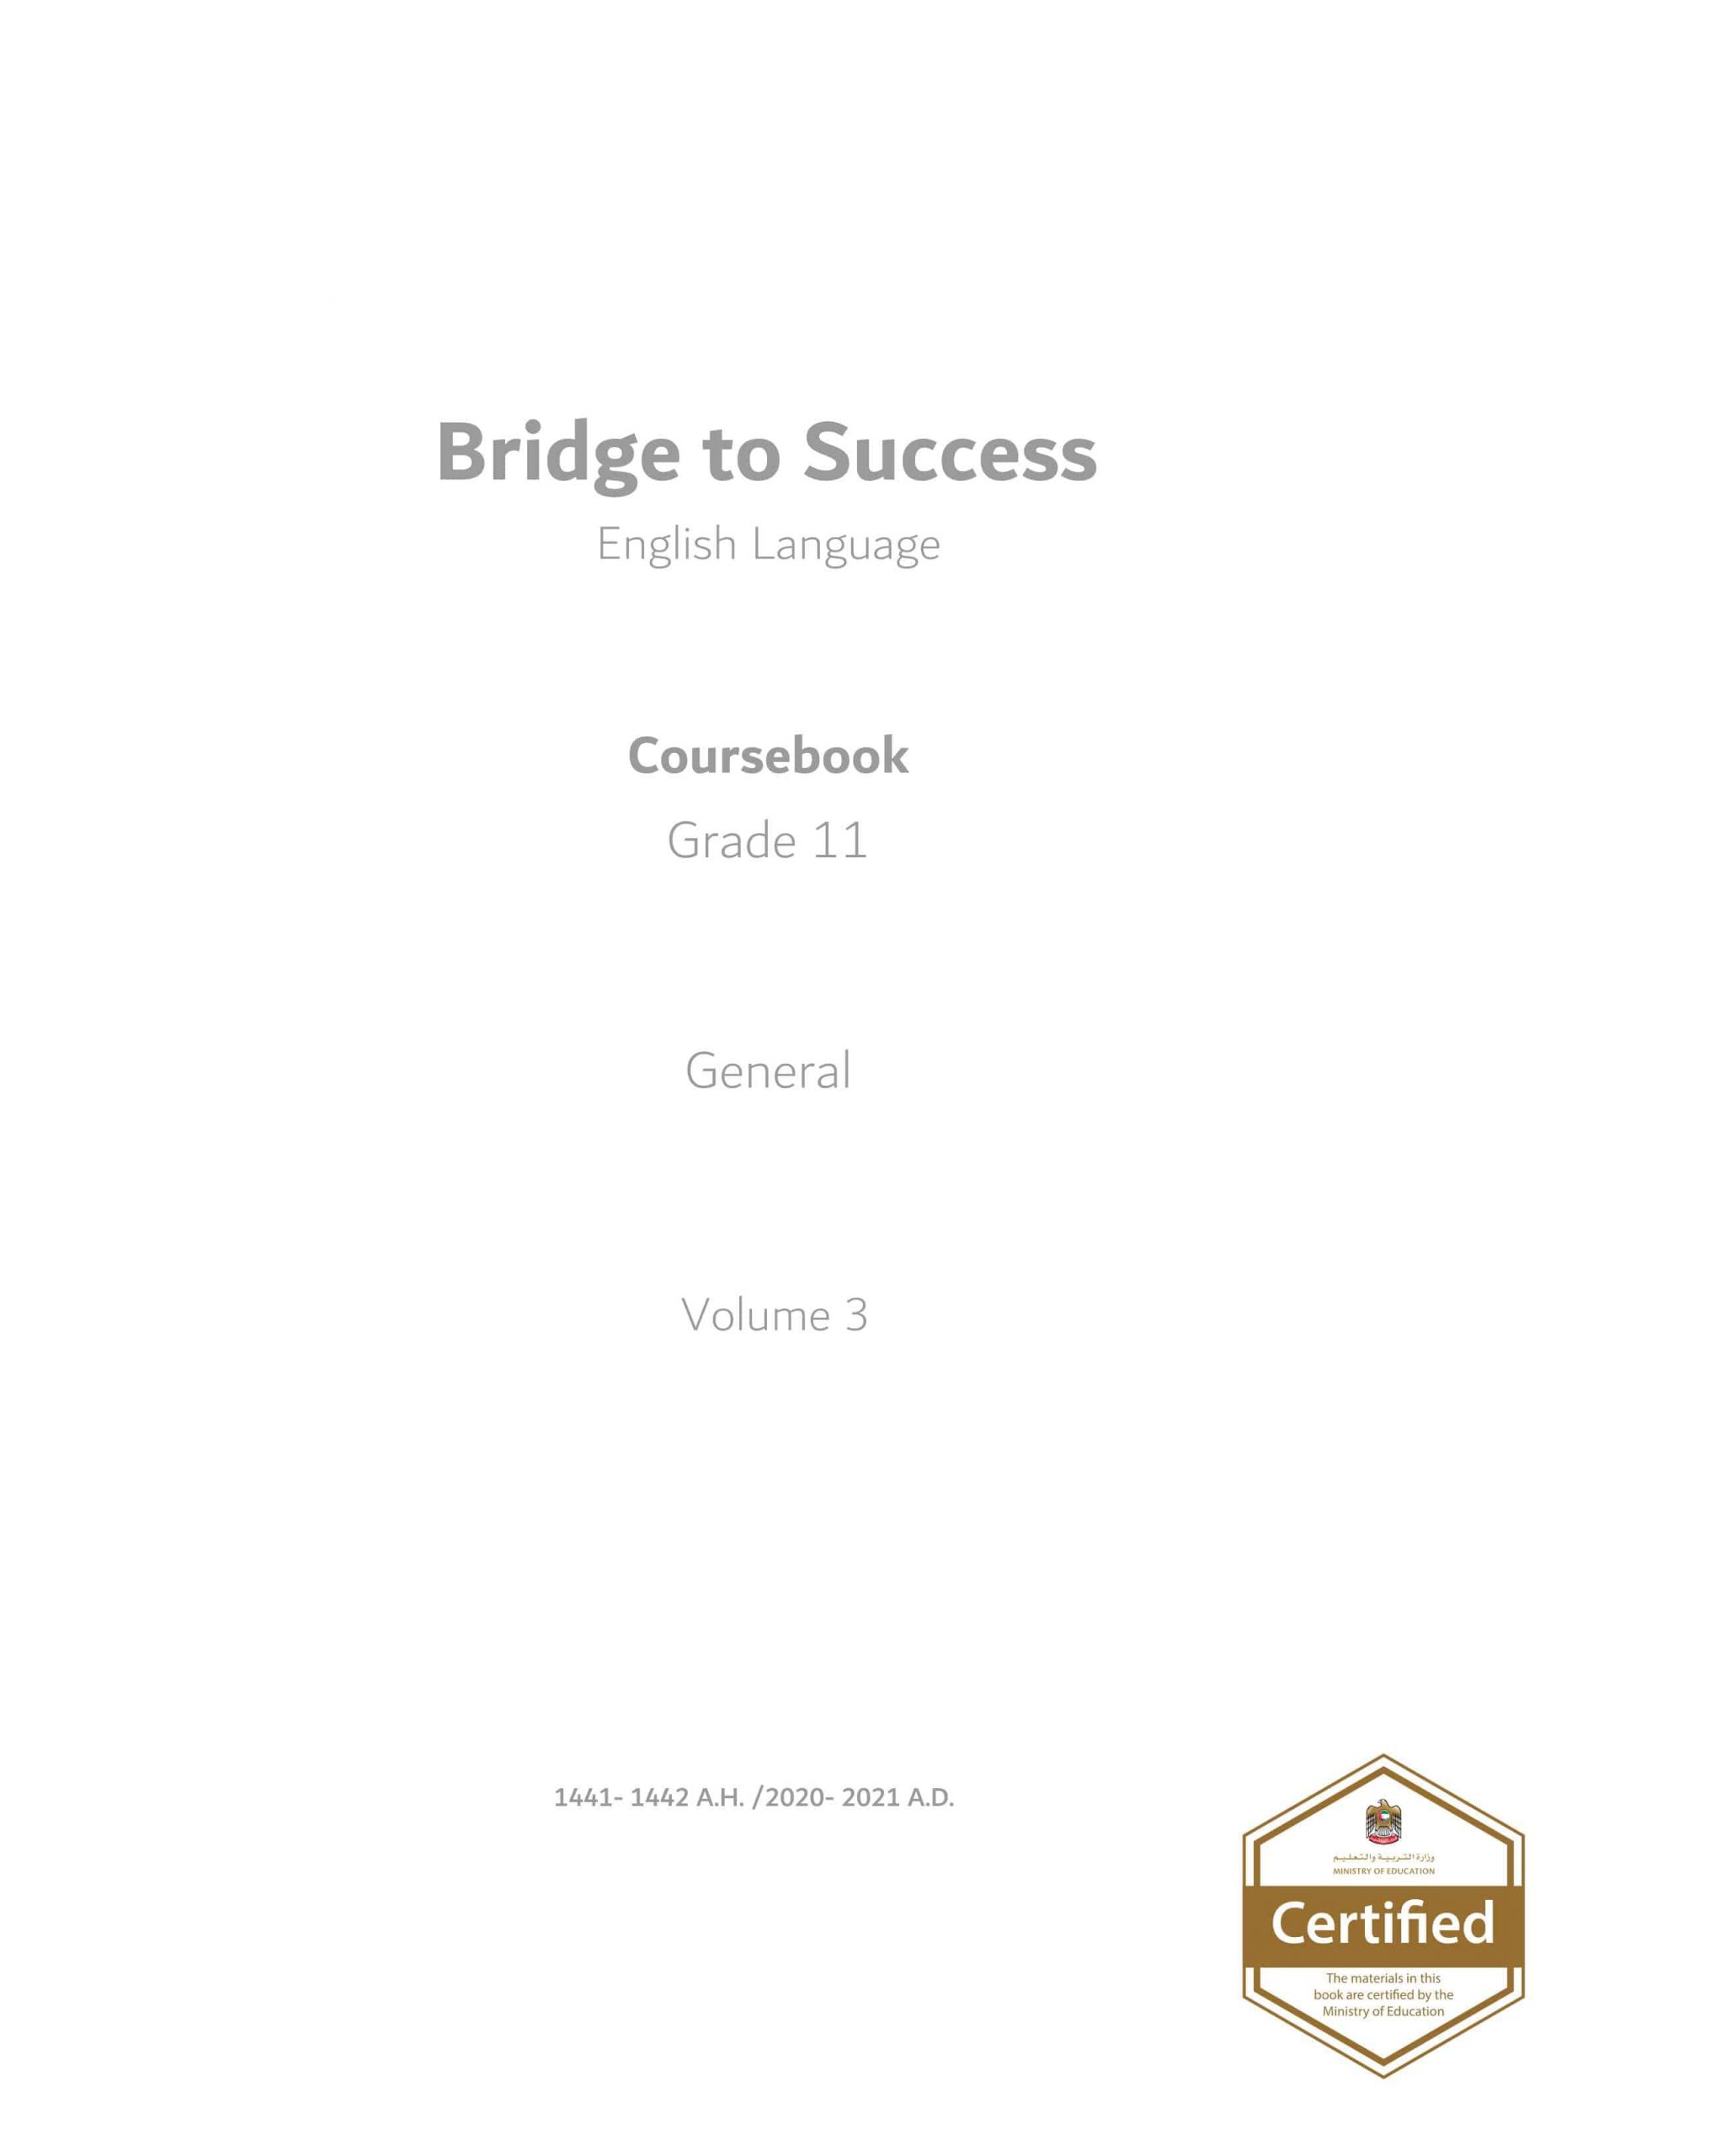 كتاب الطالب Course book الفصل الدراسي الثالث 2020-2021 الصف الحادي عشر مادة اللغة الإنجليزية 